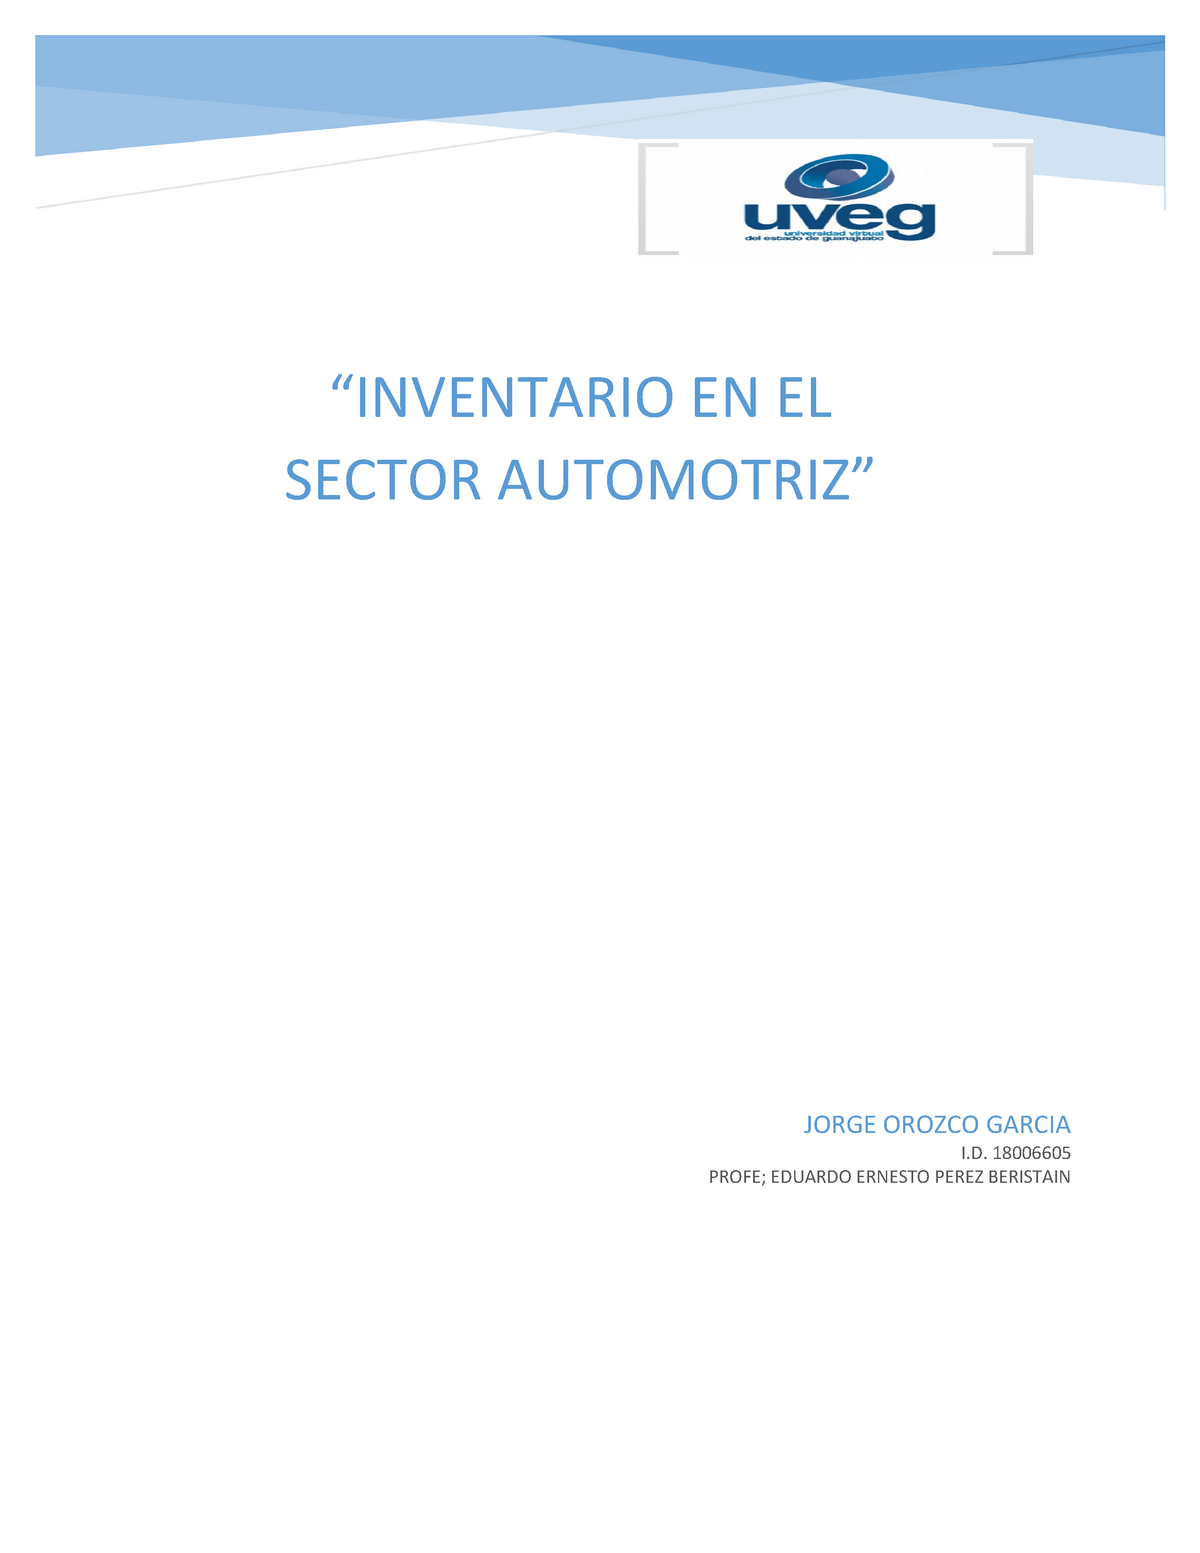 Inventario Automotriz Uveg “inventario En El Sector Automotriz” Jorge Orozco Garcia I 6292